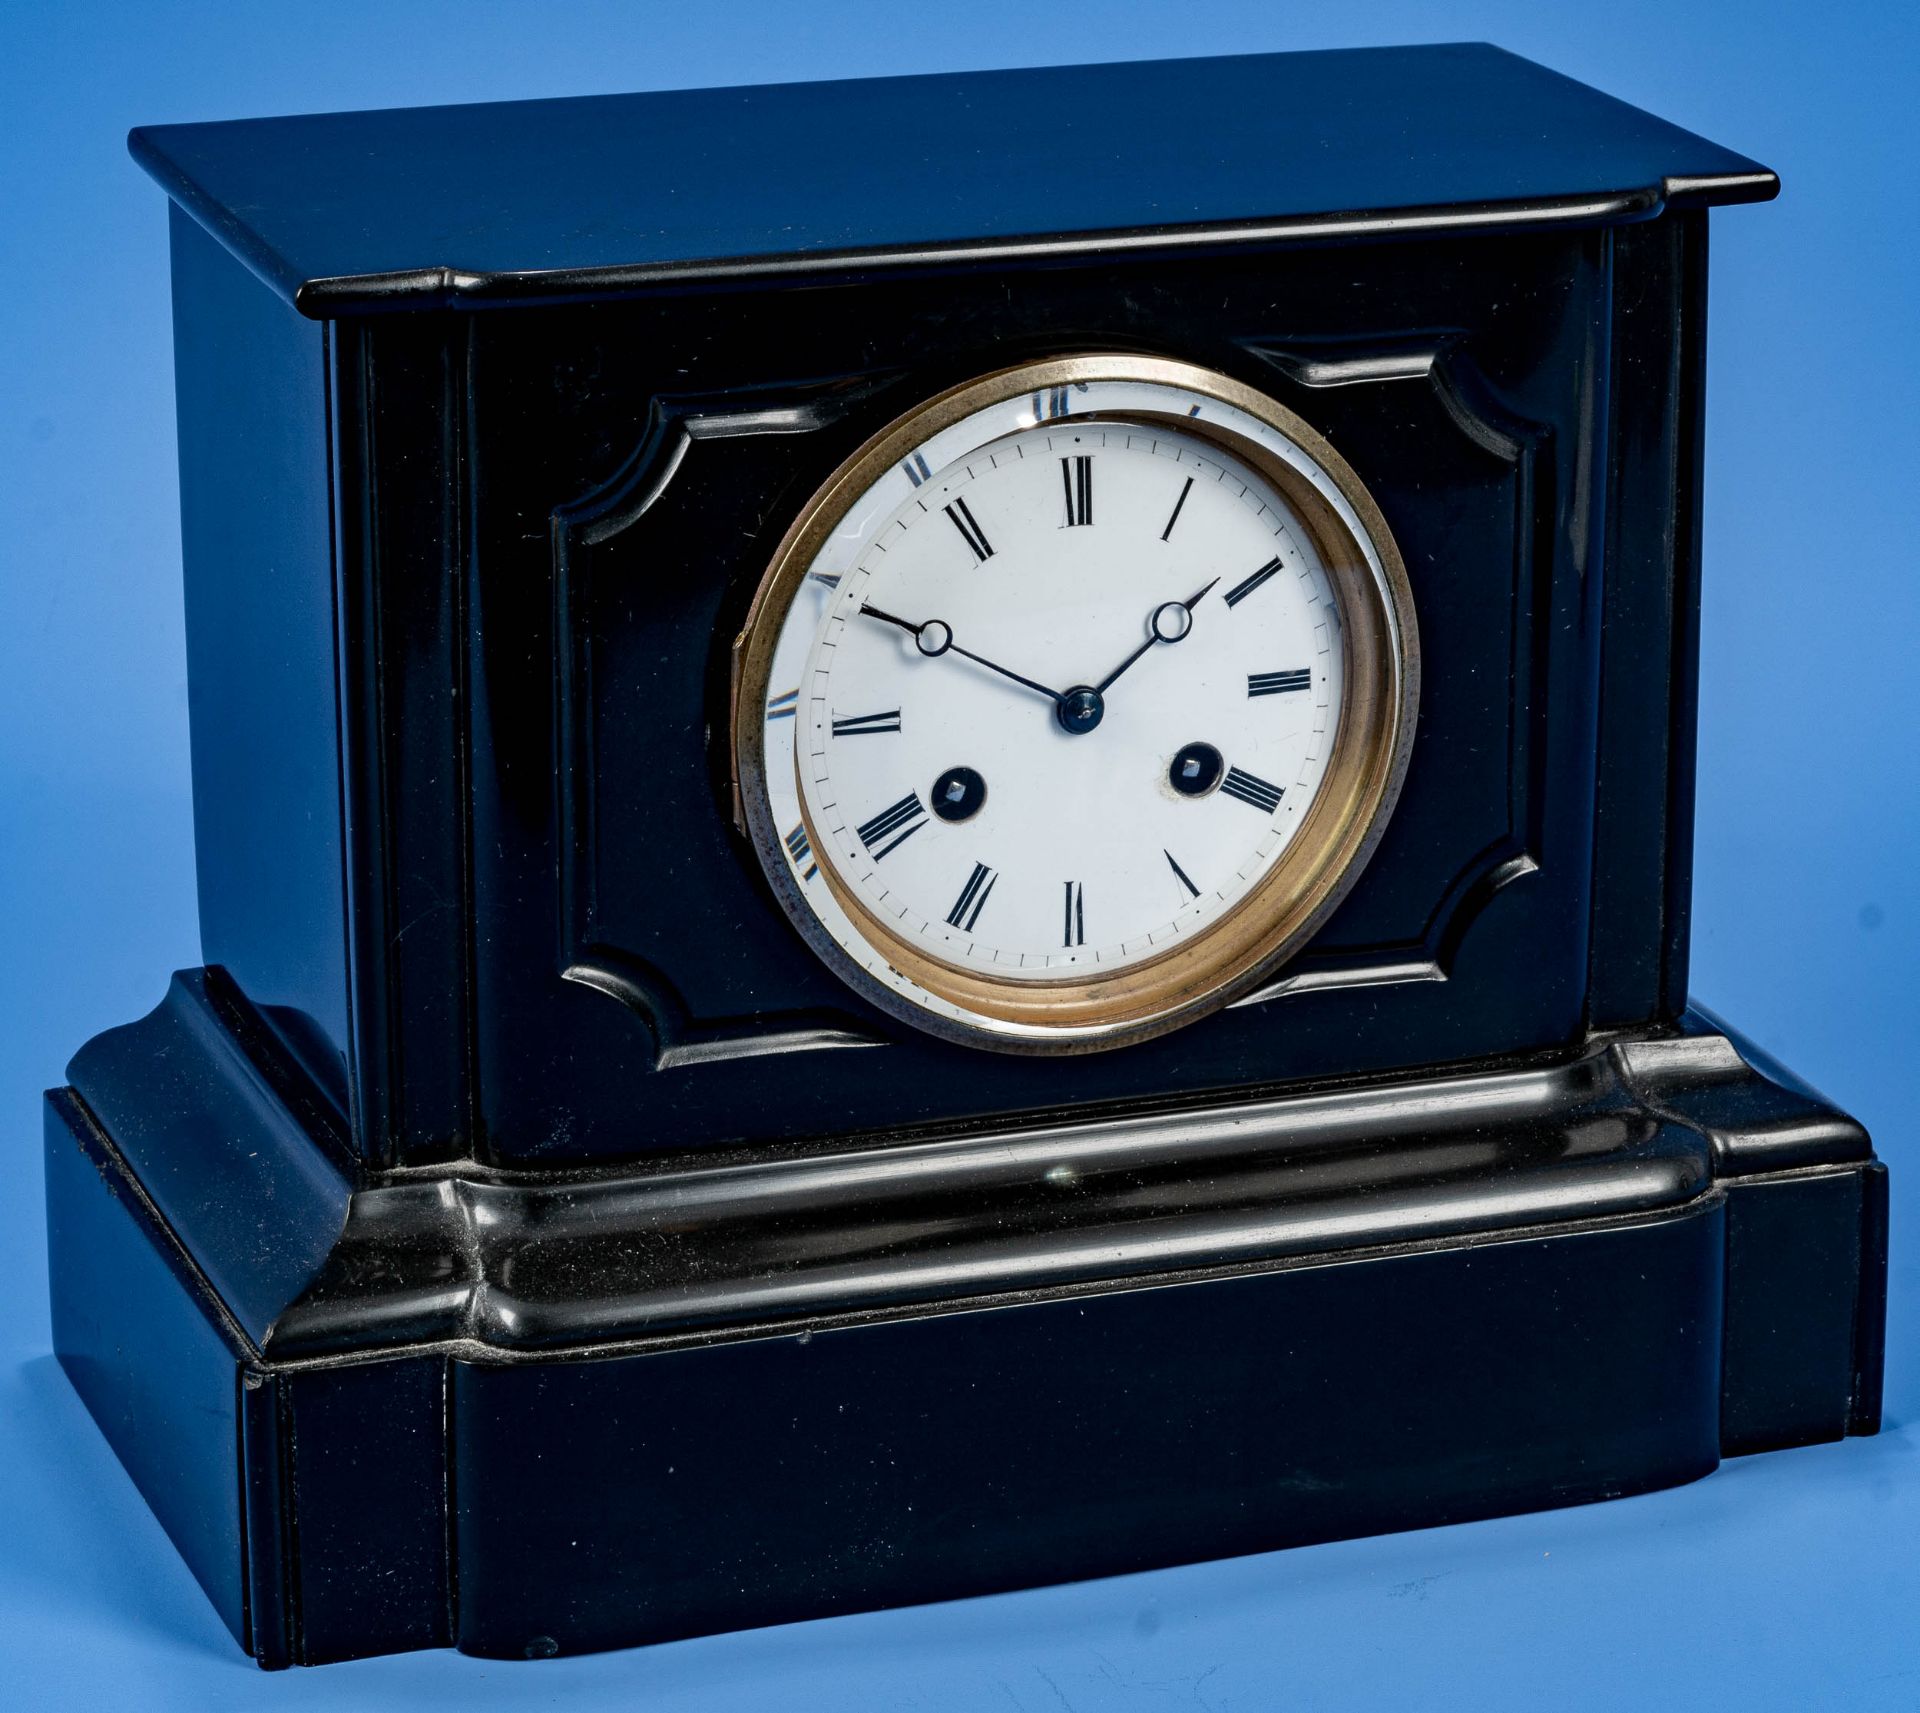 Schlichte schwarze Kaminuhr um 1900/20; schöner Erhalt, ungeprüftes mechanisches Uhrwerk mit Schlag - Bild 2 aus 12